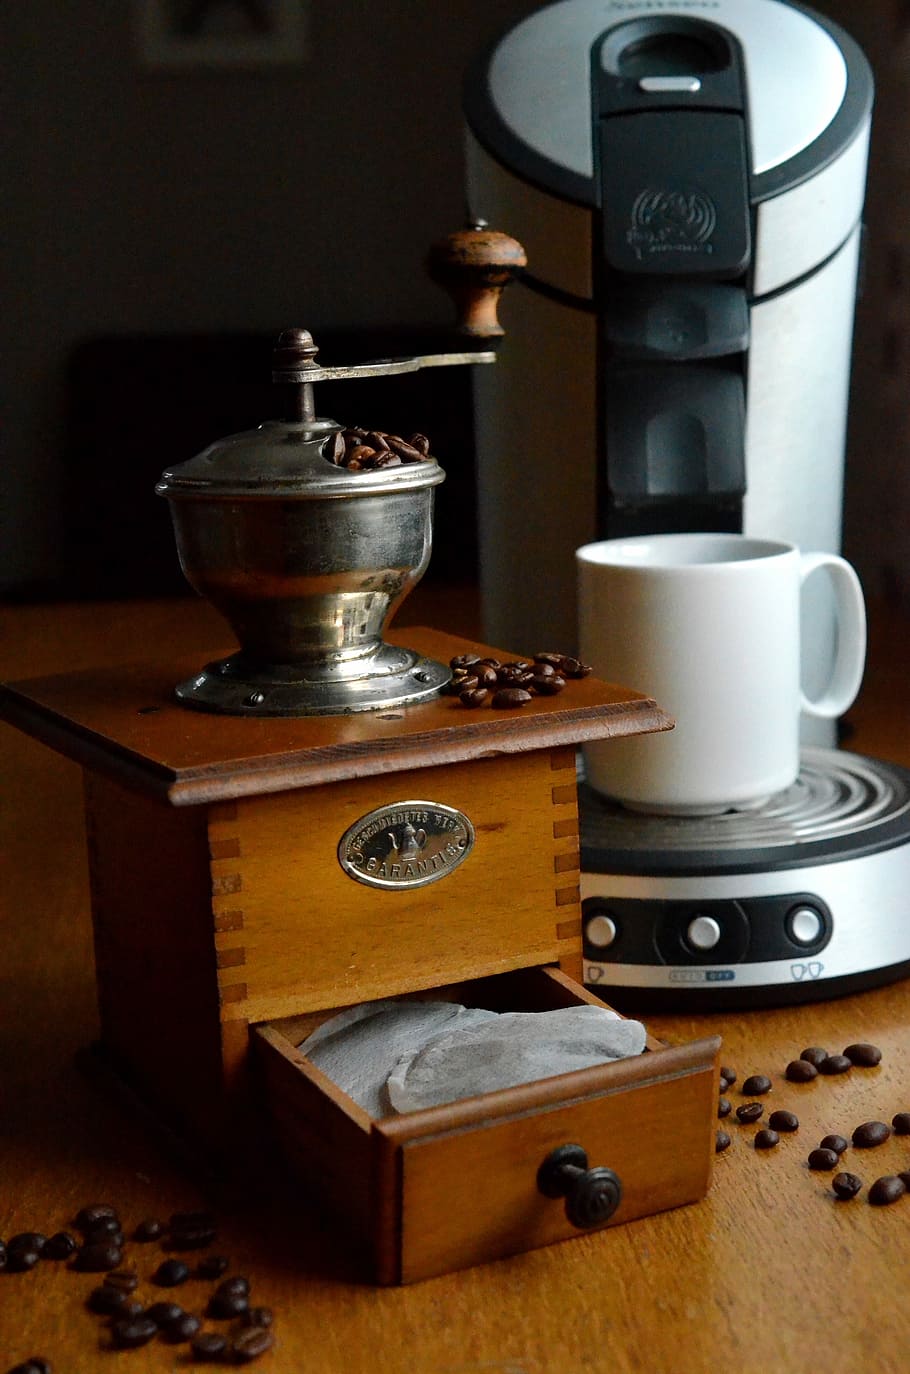 marrom, de madeira, moedor de café, cafeteira, café, moedor, almofadas, chá, feijão, almofadas de café